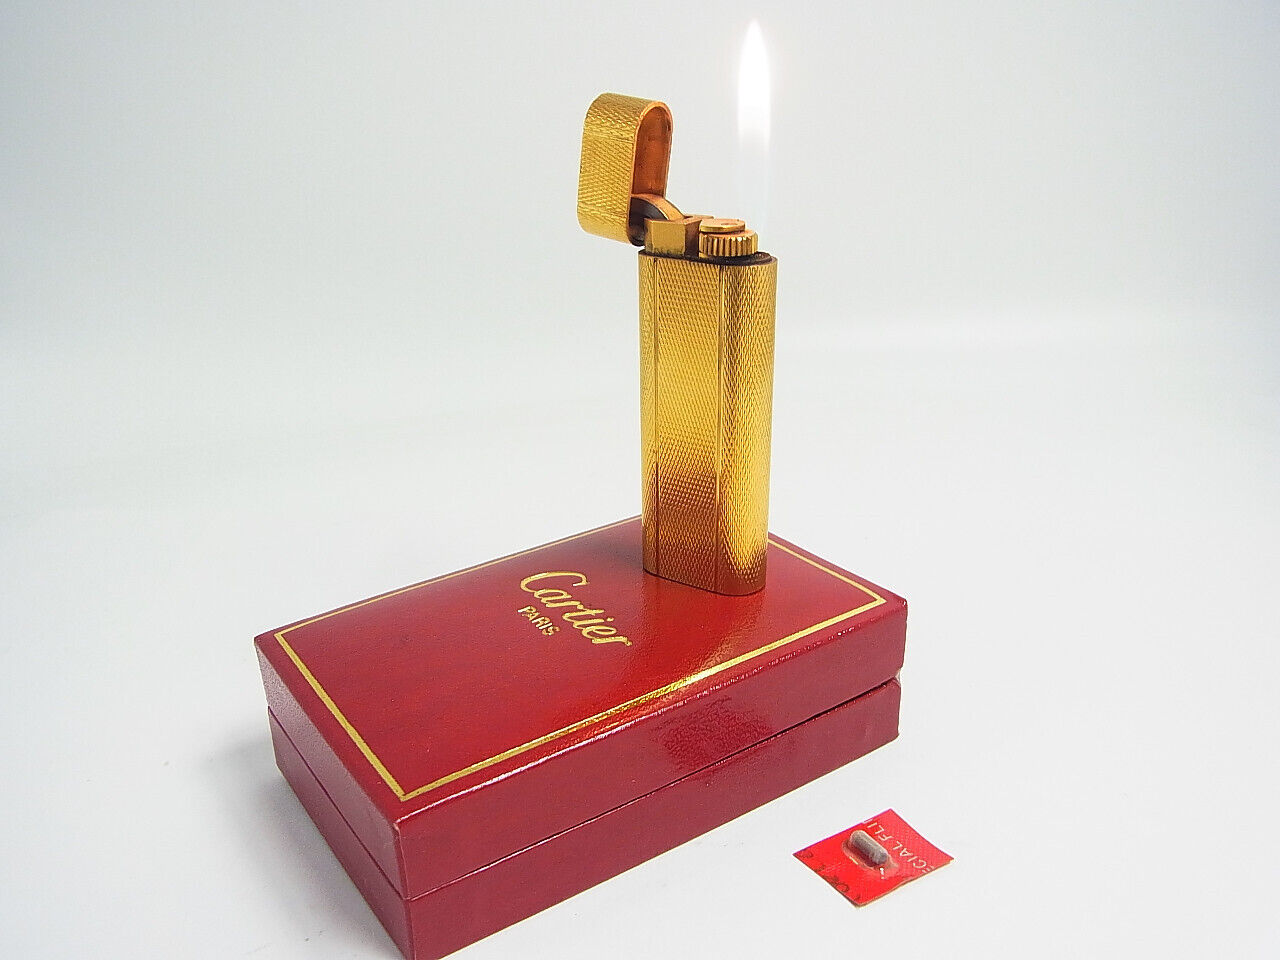 Cartier Gas Lighter Gold Plated w/Box & flint All Working